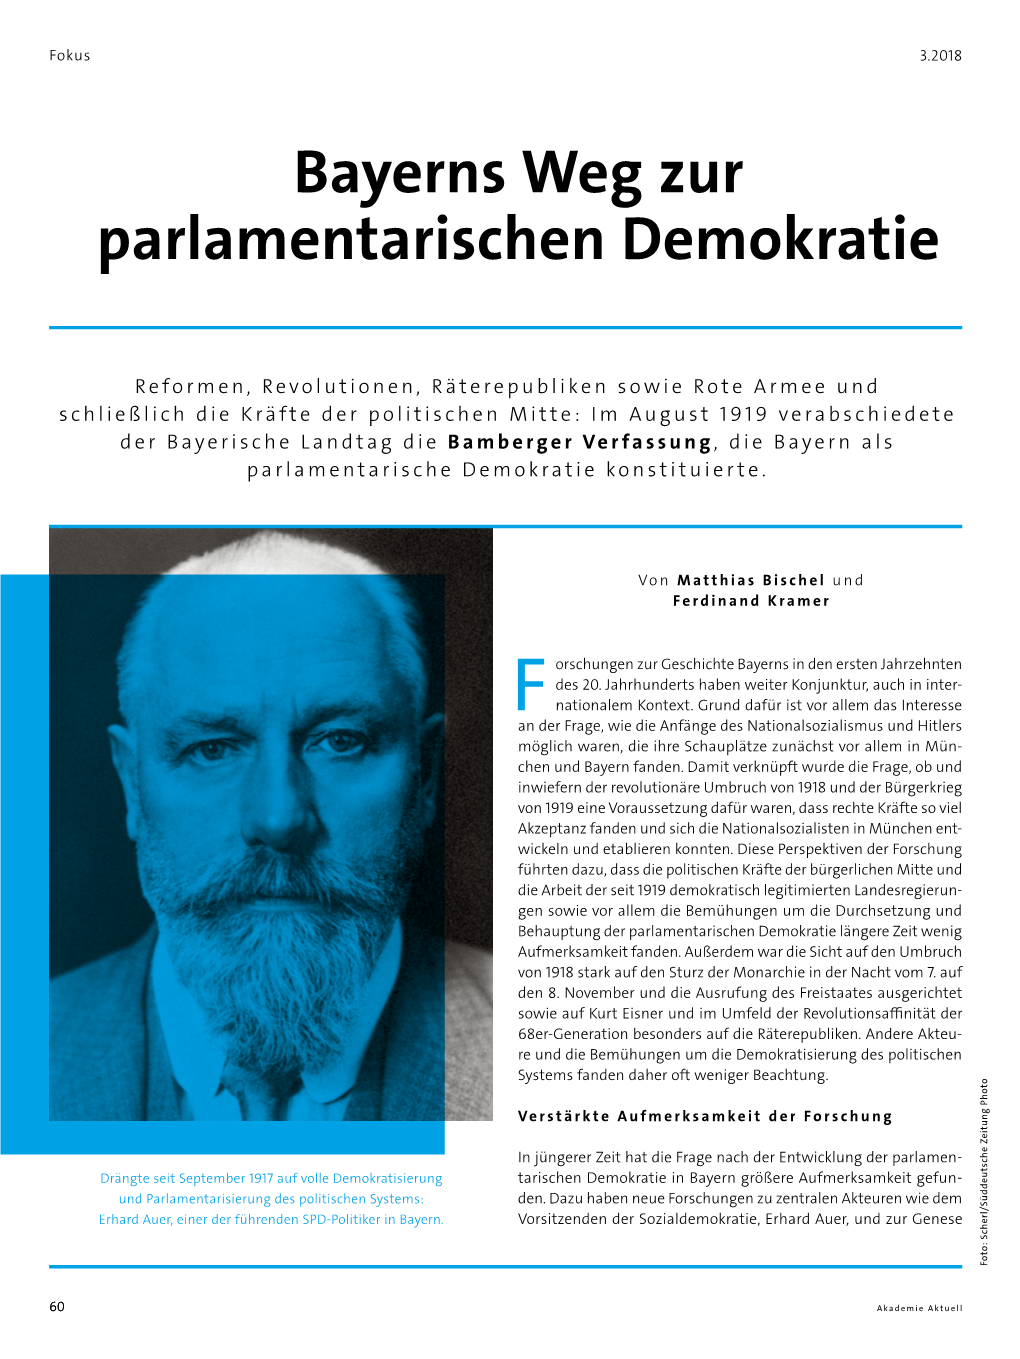 Bayerns Weg Zur Parlamentarischen Demokratie